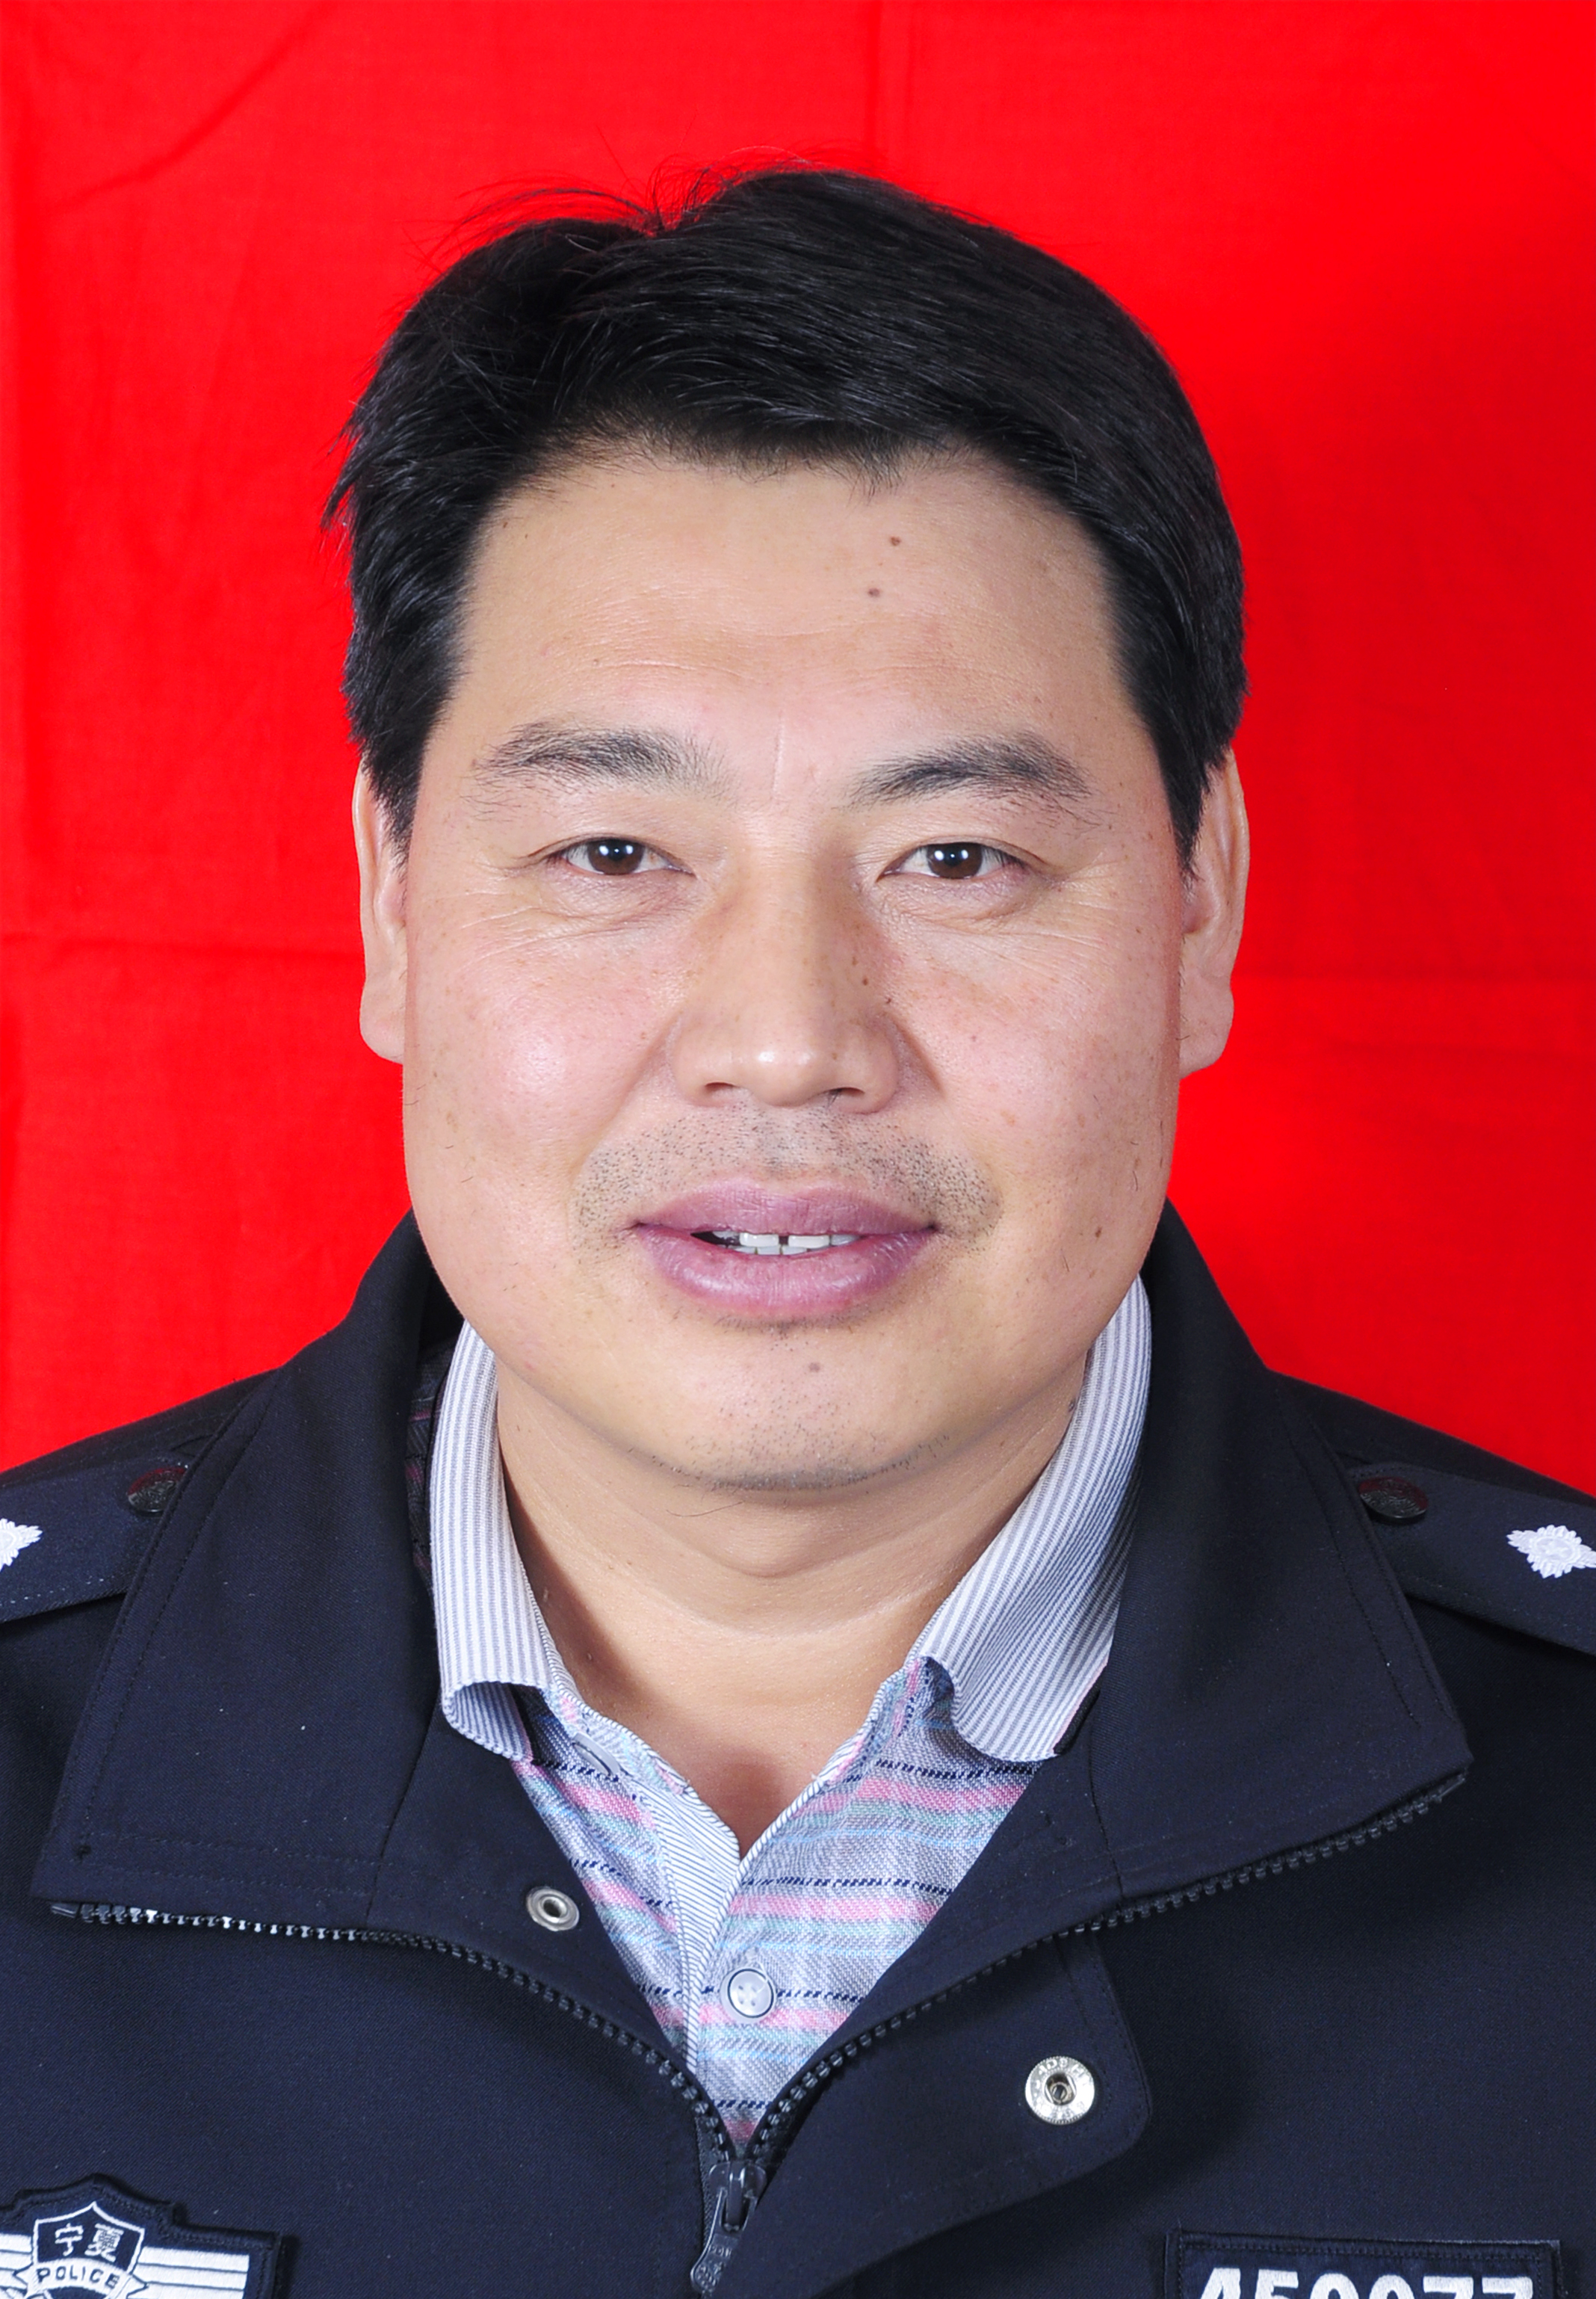 彭阳县红河镇人,1999年7月加入中国共产党,1996年7月参加工作,现任县